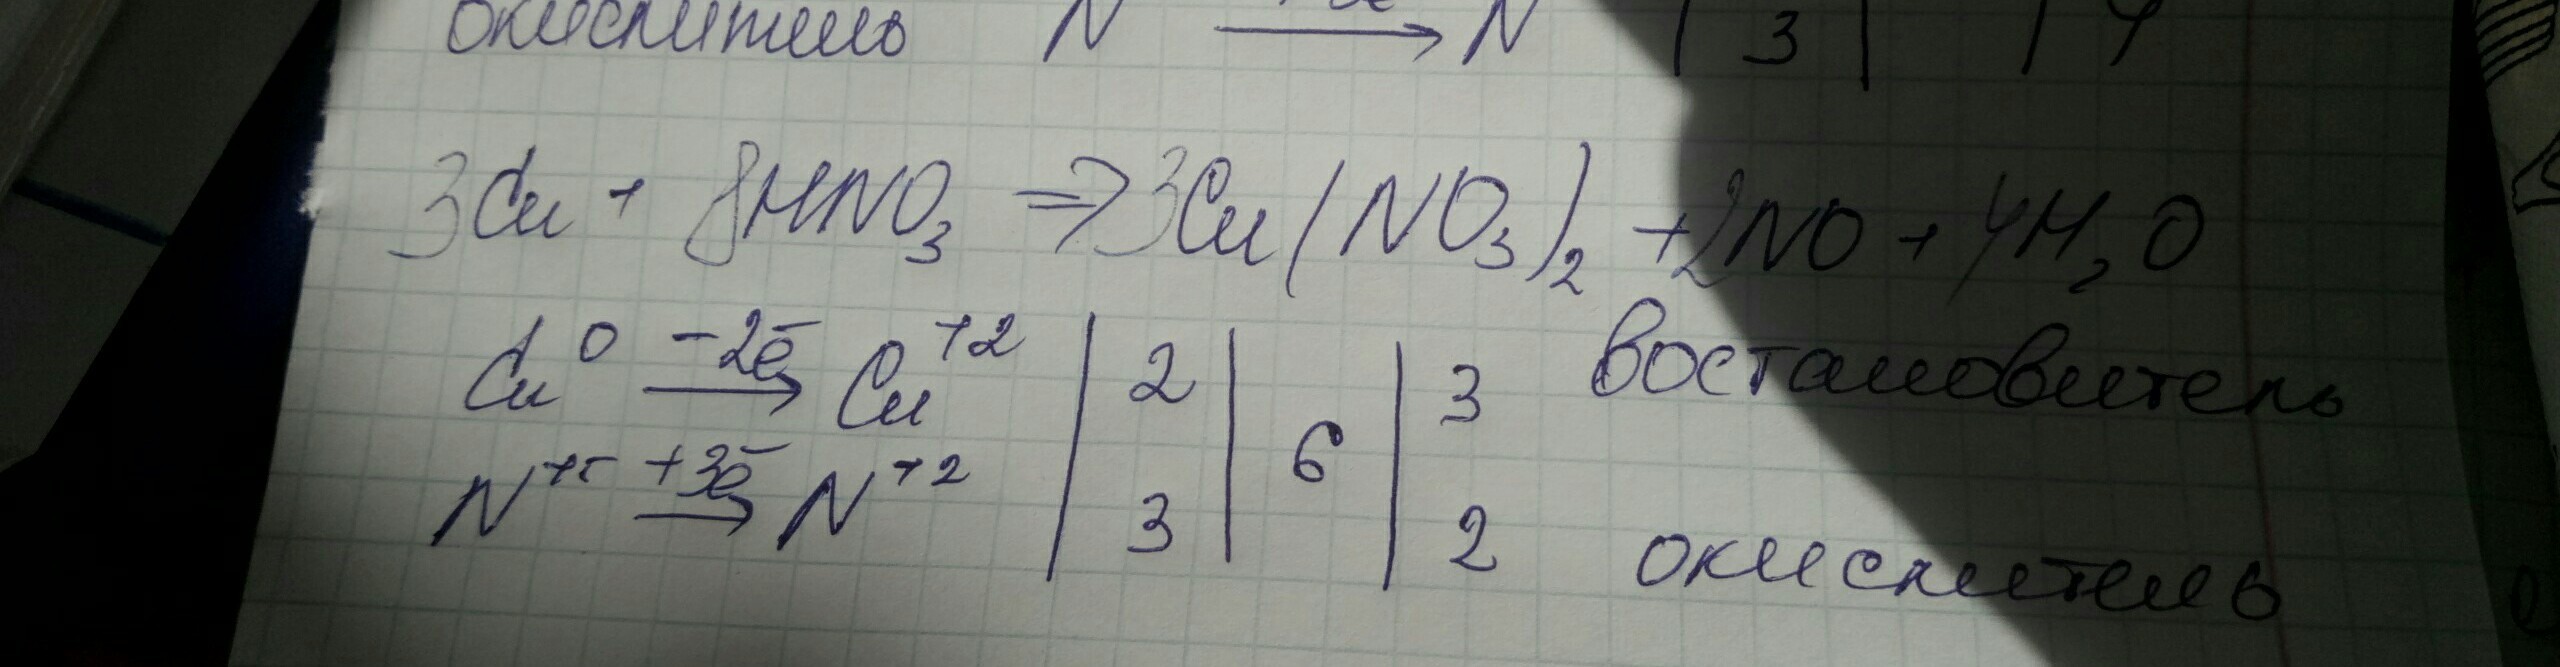 Cui cu no3 2. Cu+hno3 метод полуреакций. No3 no2 полуреакция. Cu hno3 cu no3 2 no2 h2o метод полуреакций. No2 no3 метод полуреакций.